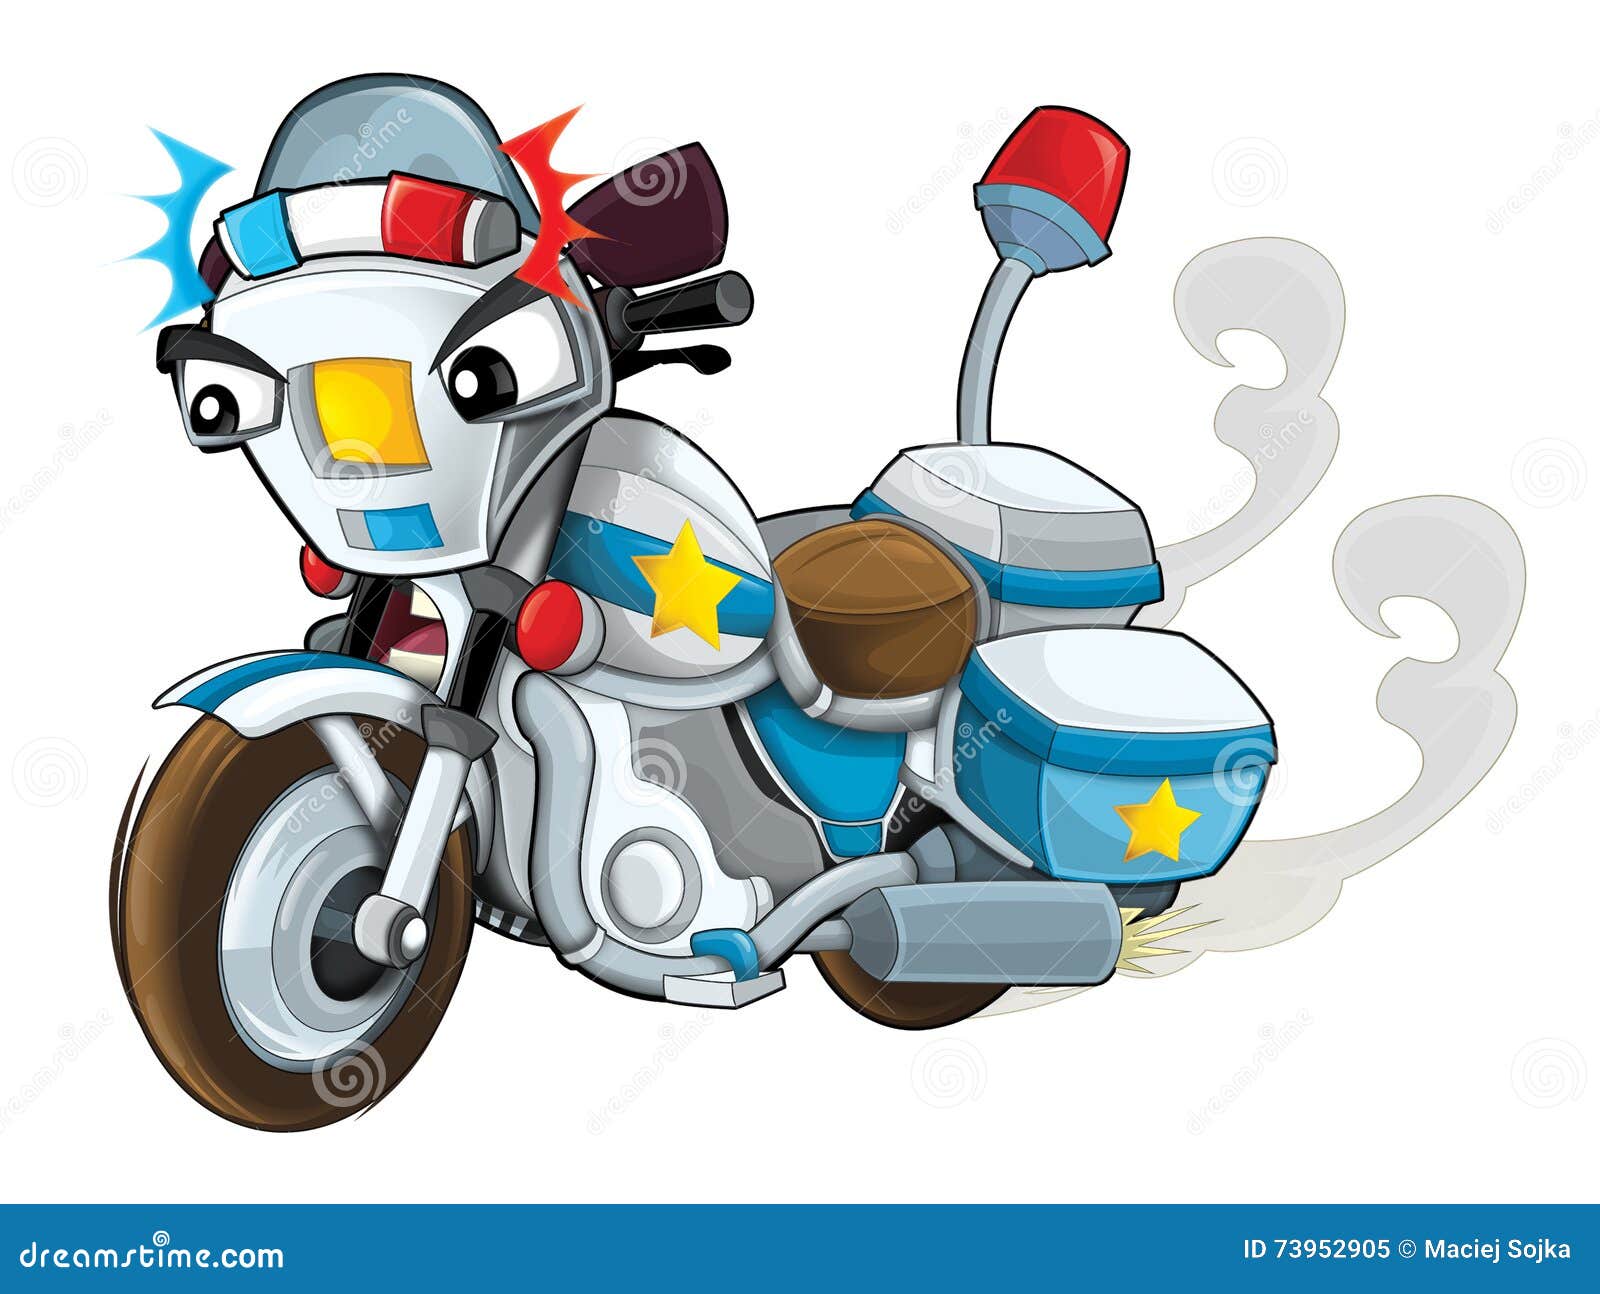 Cartoon Police Motorbike - Isolated Stock Illustration - Illustration of  emergency, chase: 73952905